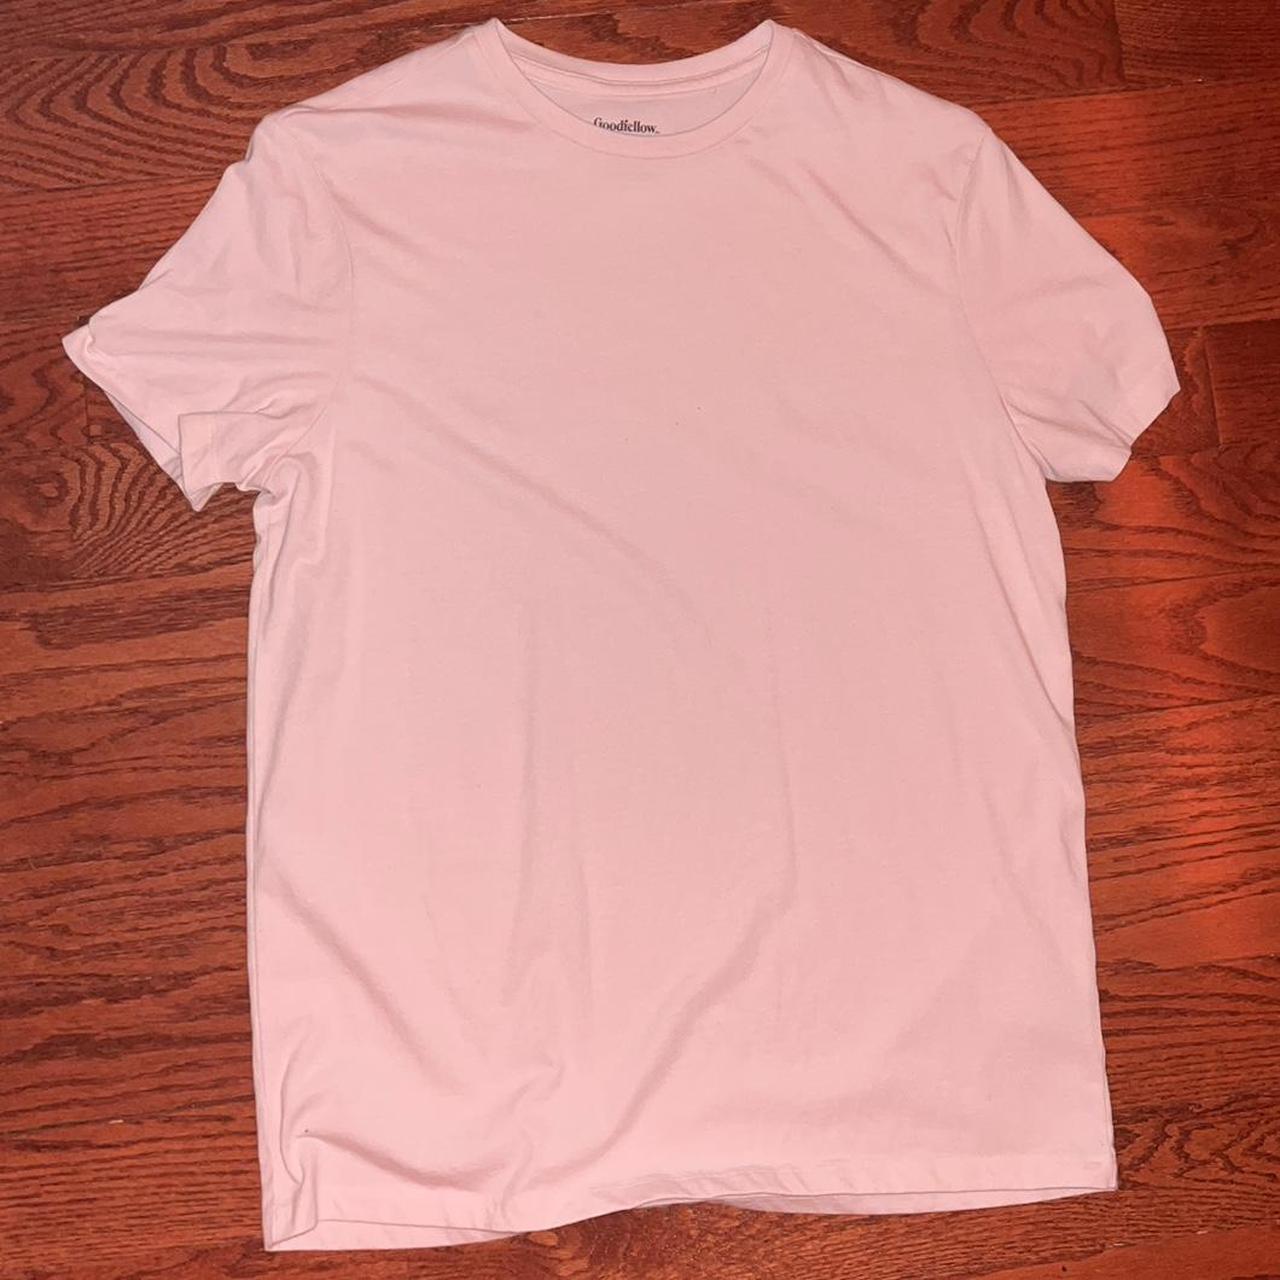 Goodfellow & Co. Men's Pink T-shirt | Depop